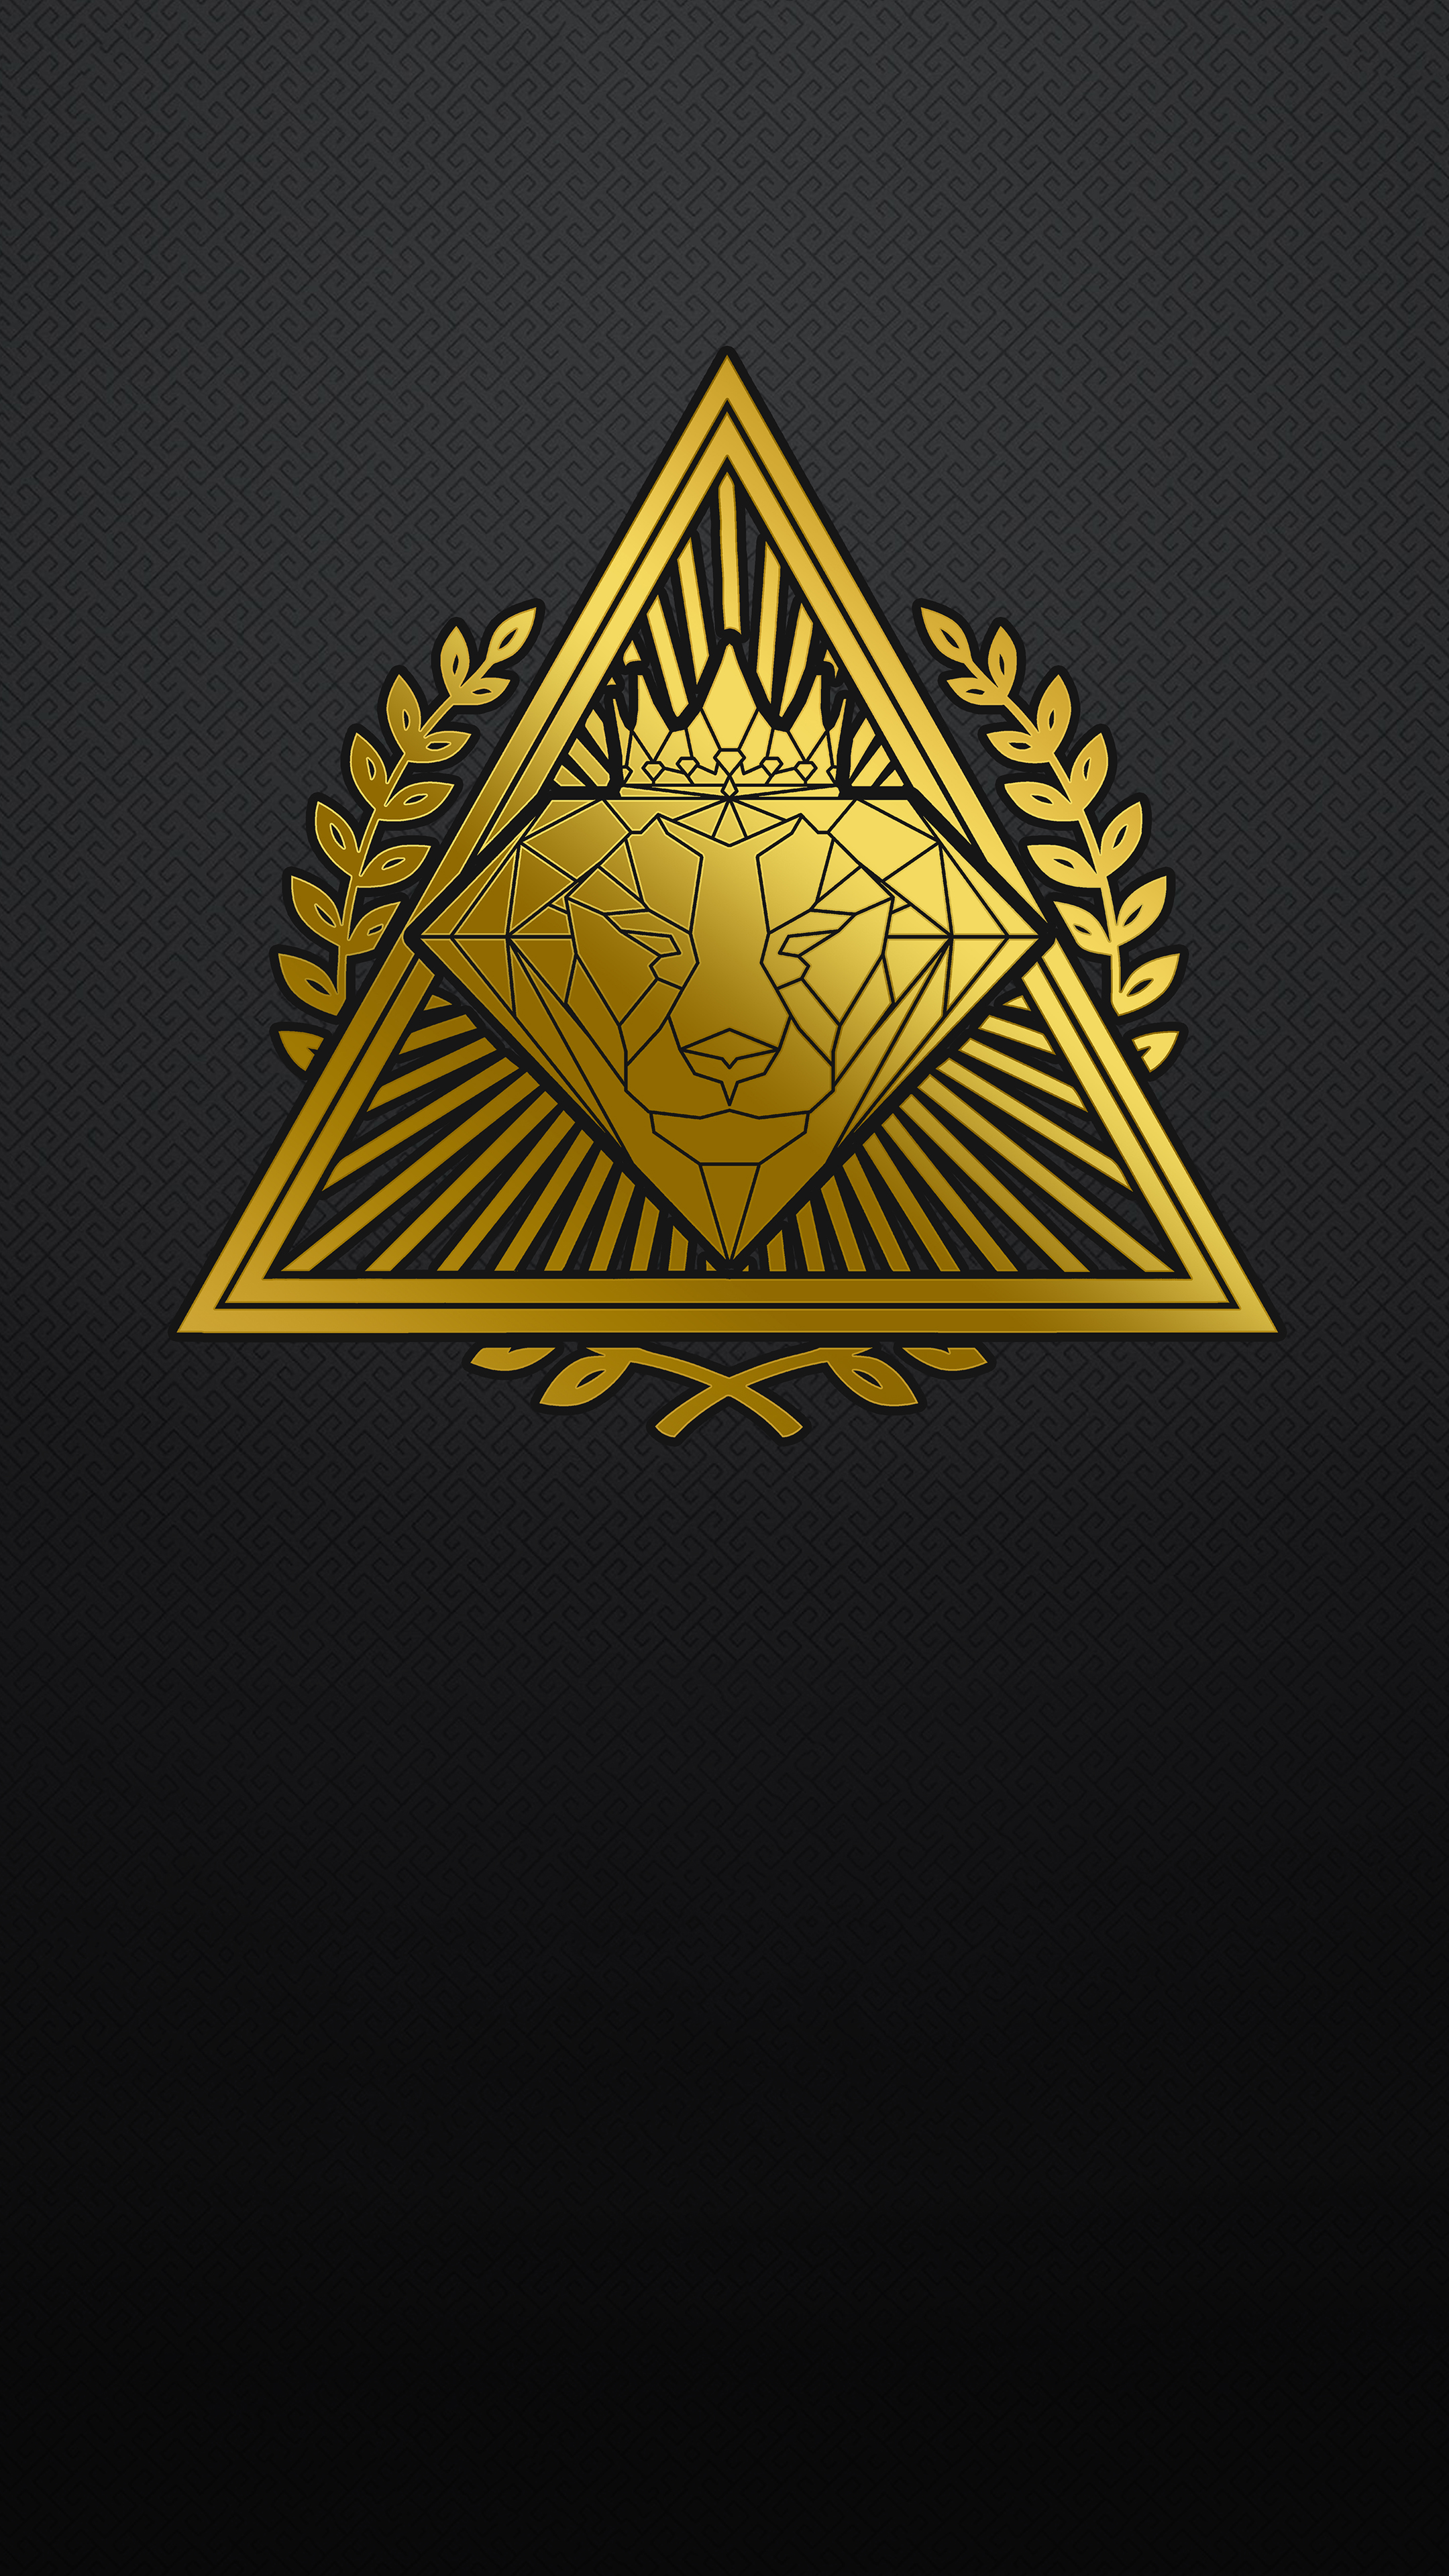 Hình nền Brokerhood Gold logo là sự lựa chọn tuyệt vời cho những ai yêu thích sự đẳng cấp và mạnh mẽ. Với thiết kế đơn giản và tinh tế, cùng chất lượng 4K đỉnh cao, bức ảnh này sẽ khiến bạn tự tin và nổi bật hơn trong mọi hoạt động công việc.